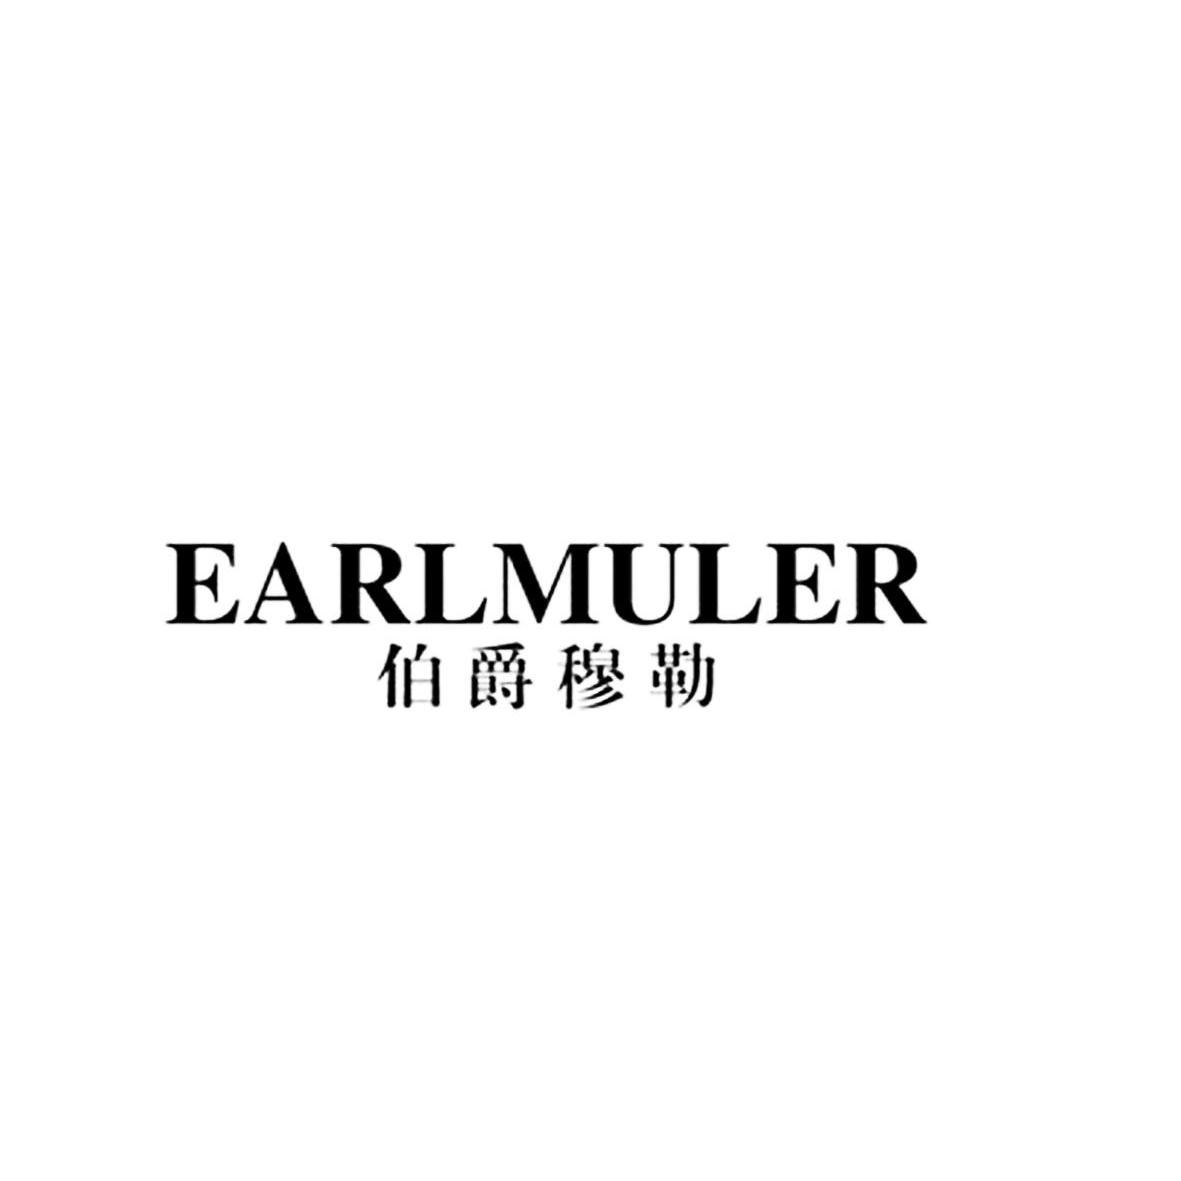 25类-服装鞋帽伯爵穆勒 EARLMULER商标转让